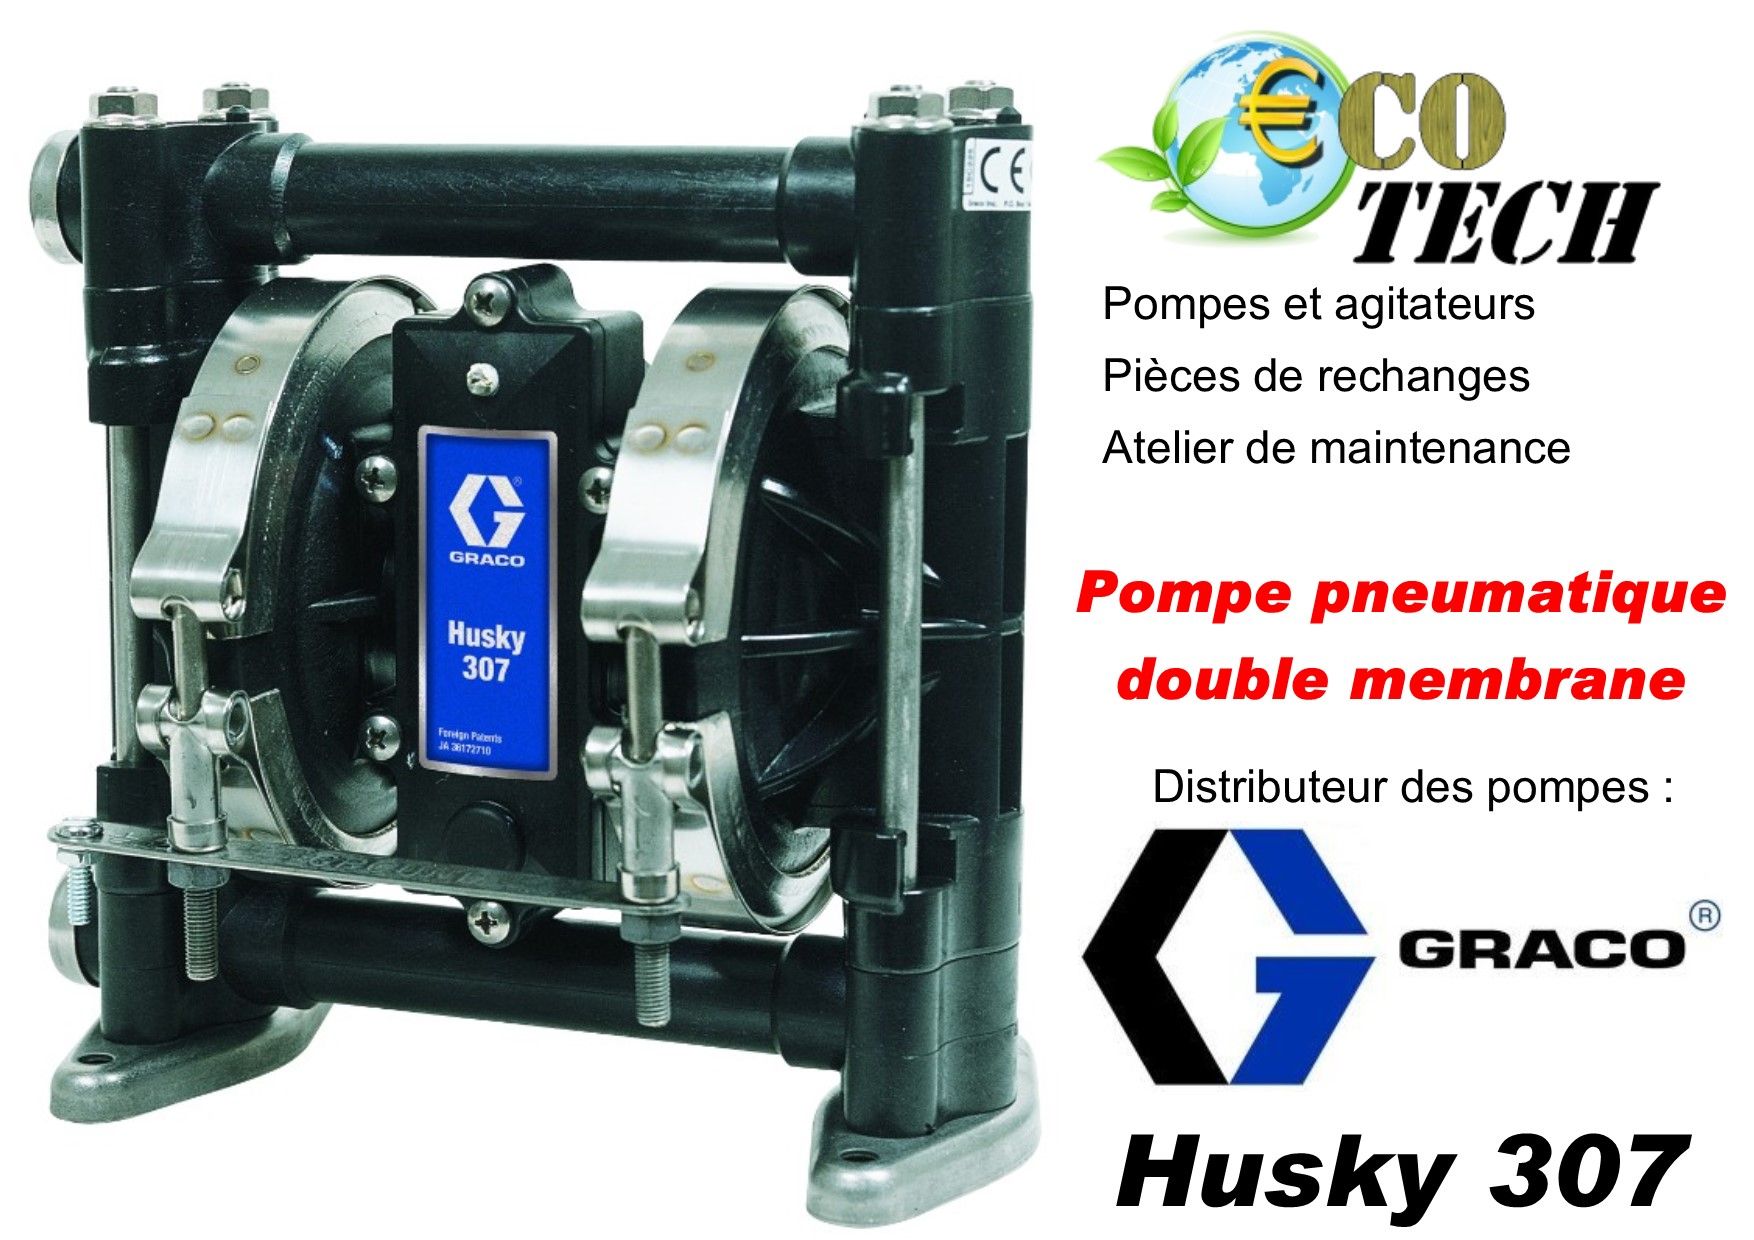 Graco husky 307 pompes pneumatiques à membrane dispo. En polypropylène et eacéta_0